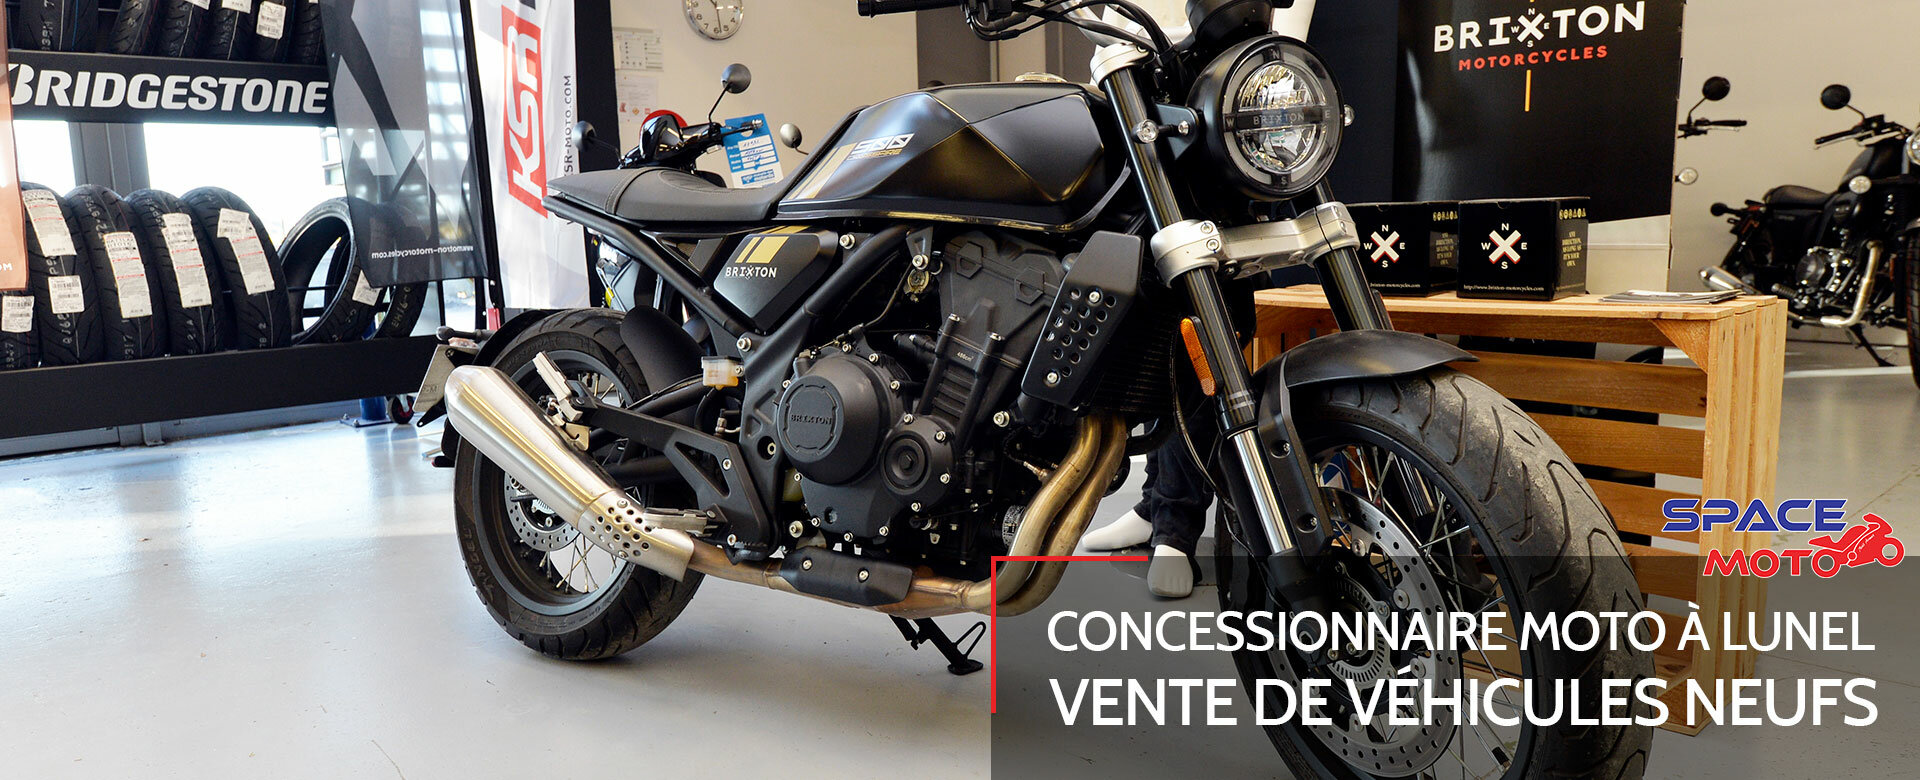 Accueil - Space Moto concessionnaire moto - Secteur Lunel, Nîmes